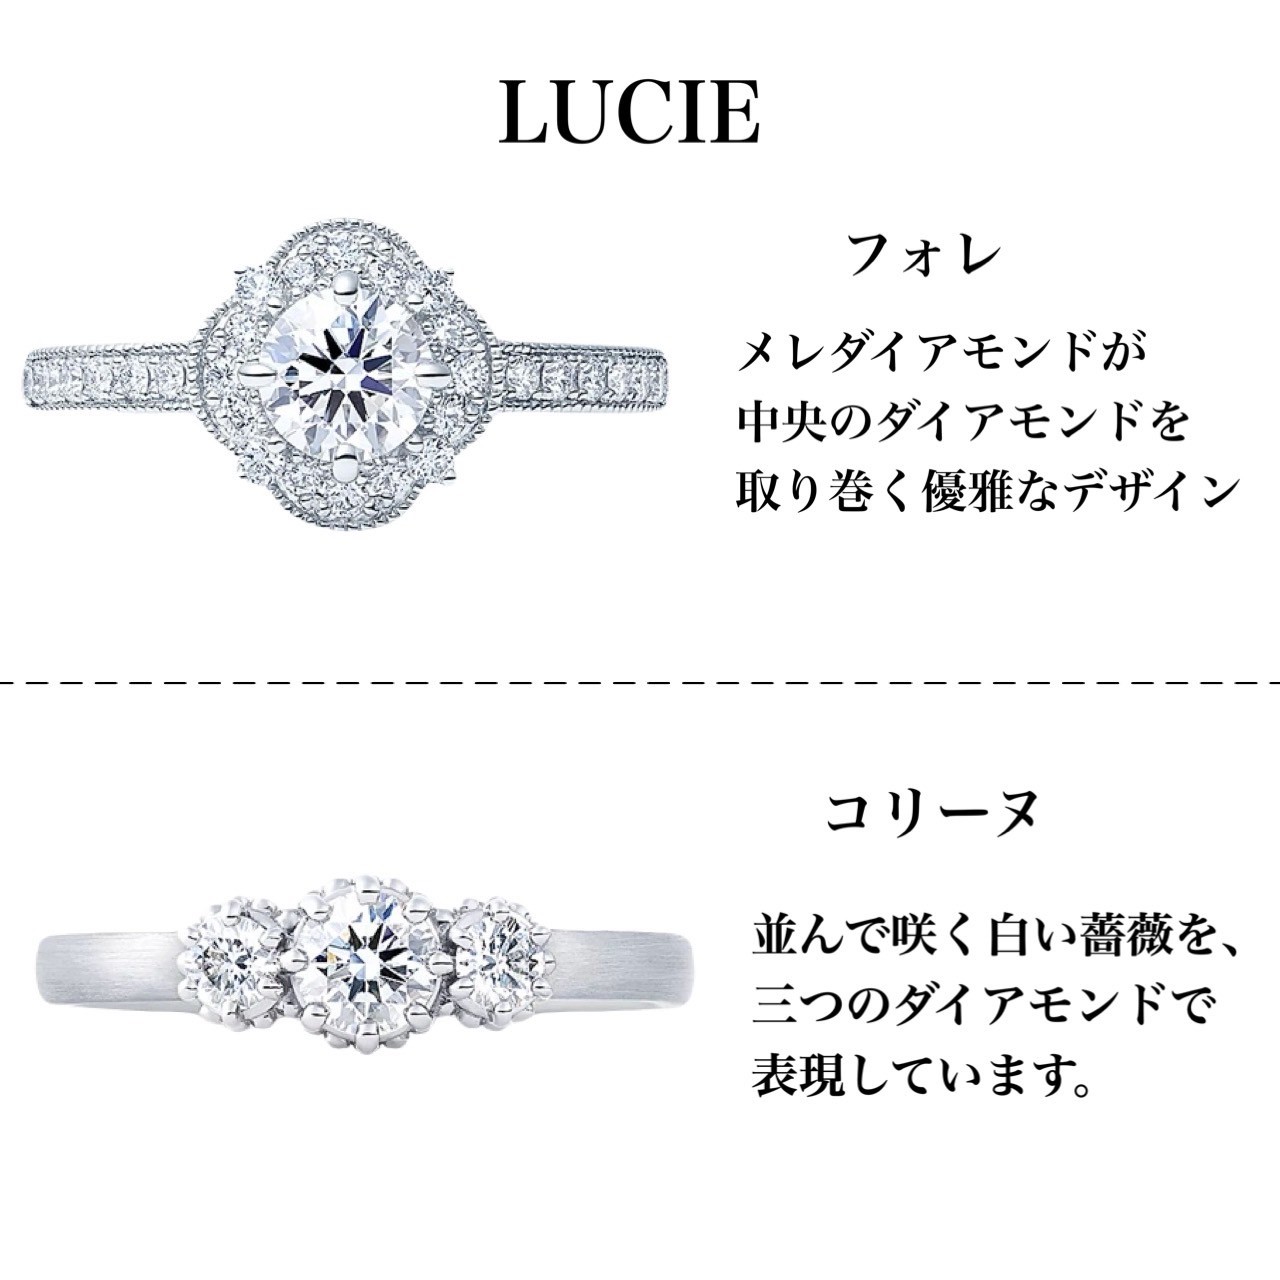 アンティークな印象のルシエの婚約指輪